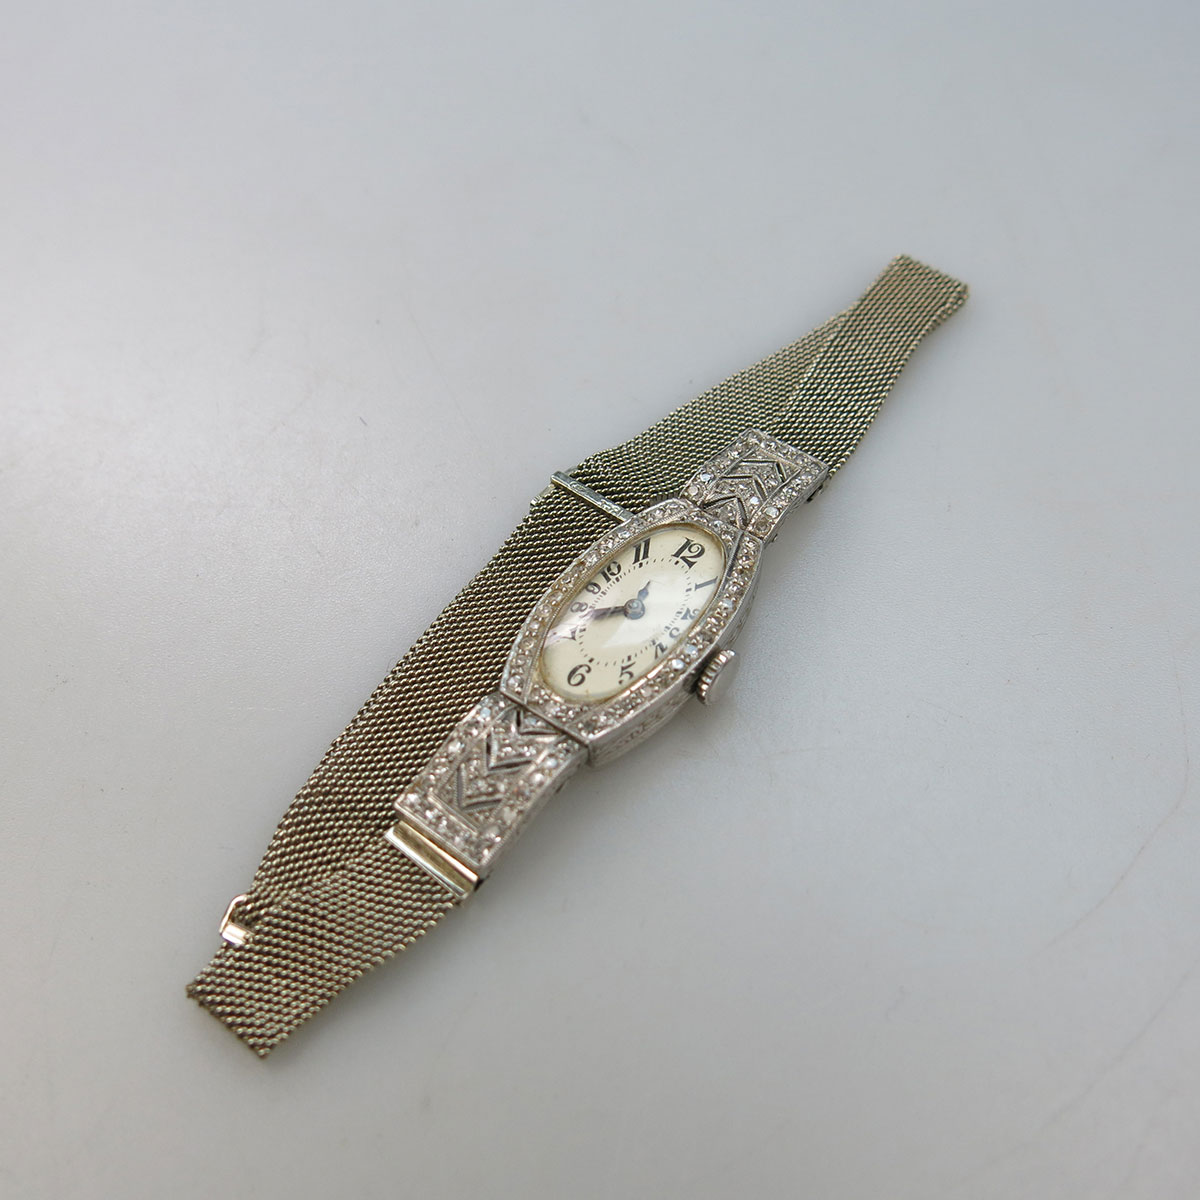 Lady’s Swiss Wristwatch